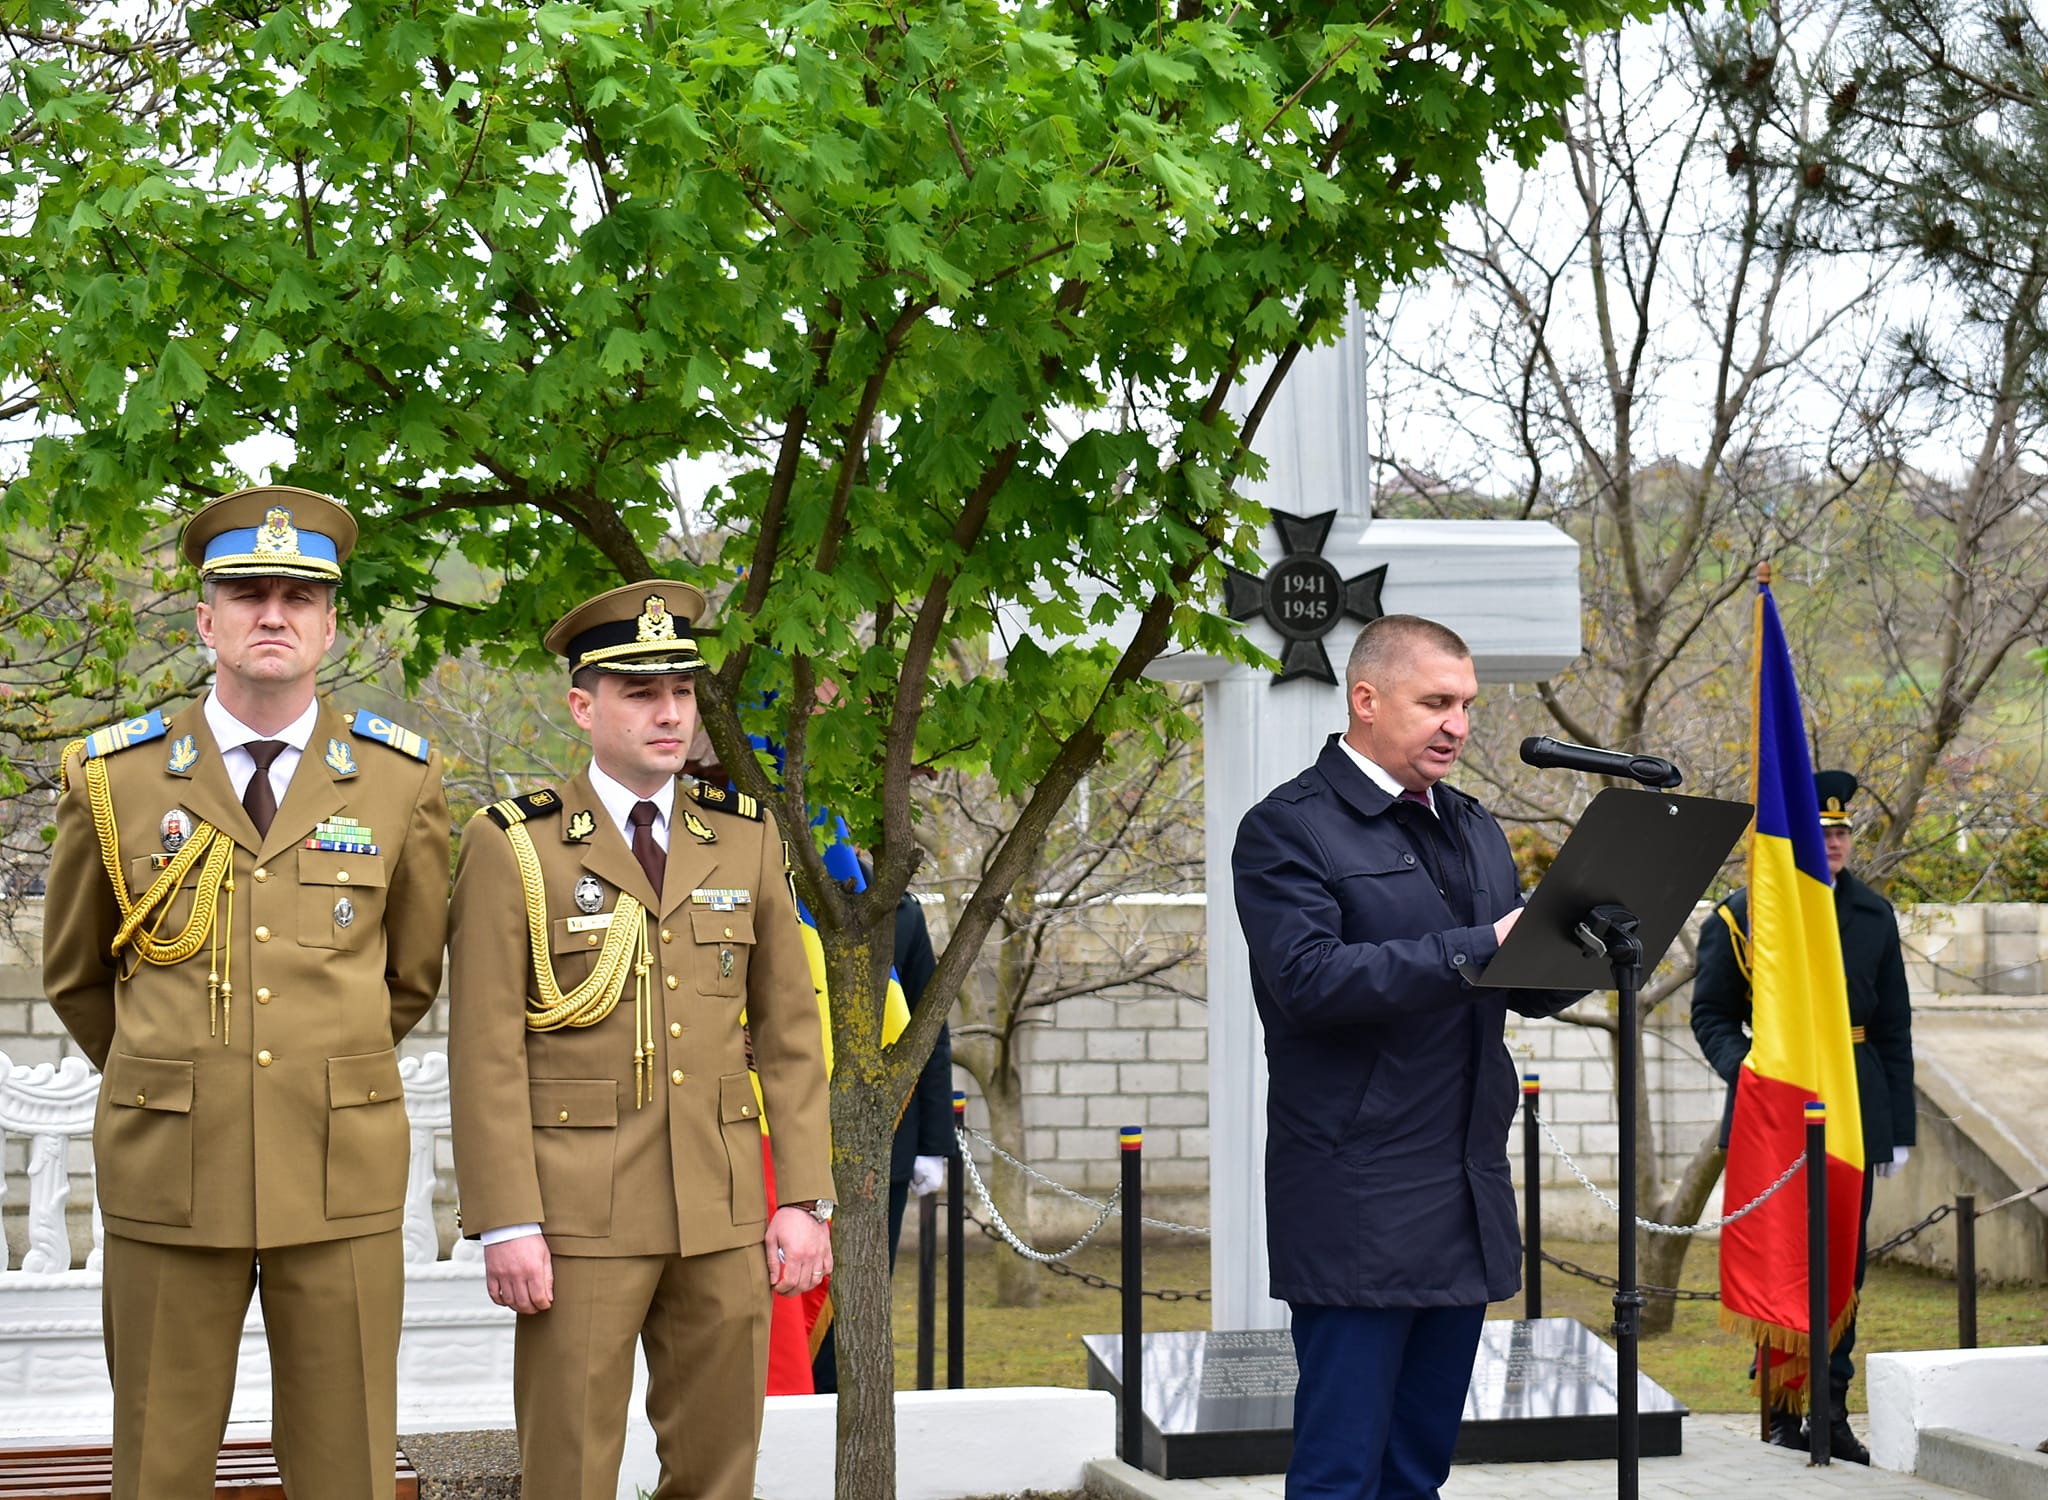 FOTO Monument al eroilor români, inaugurat la Hîncești. La eveniment a participat și un oficial din România